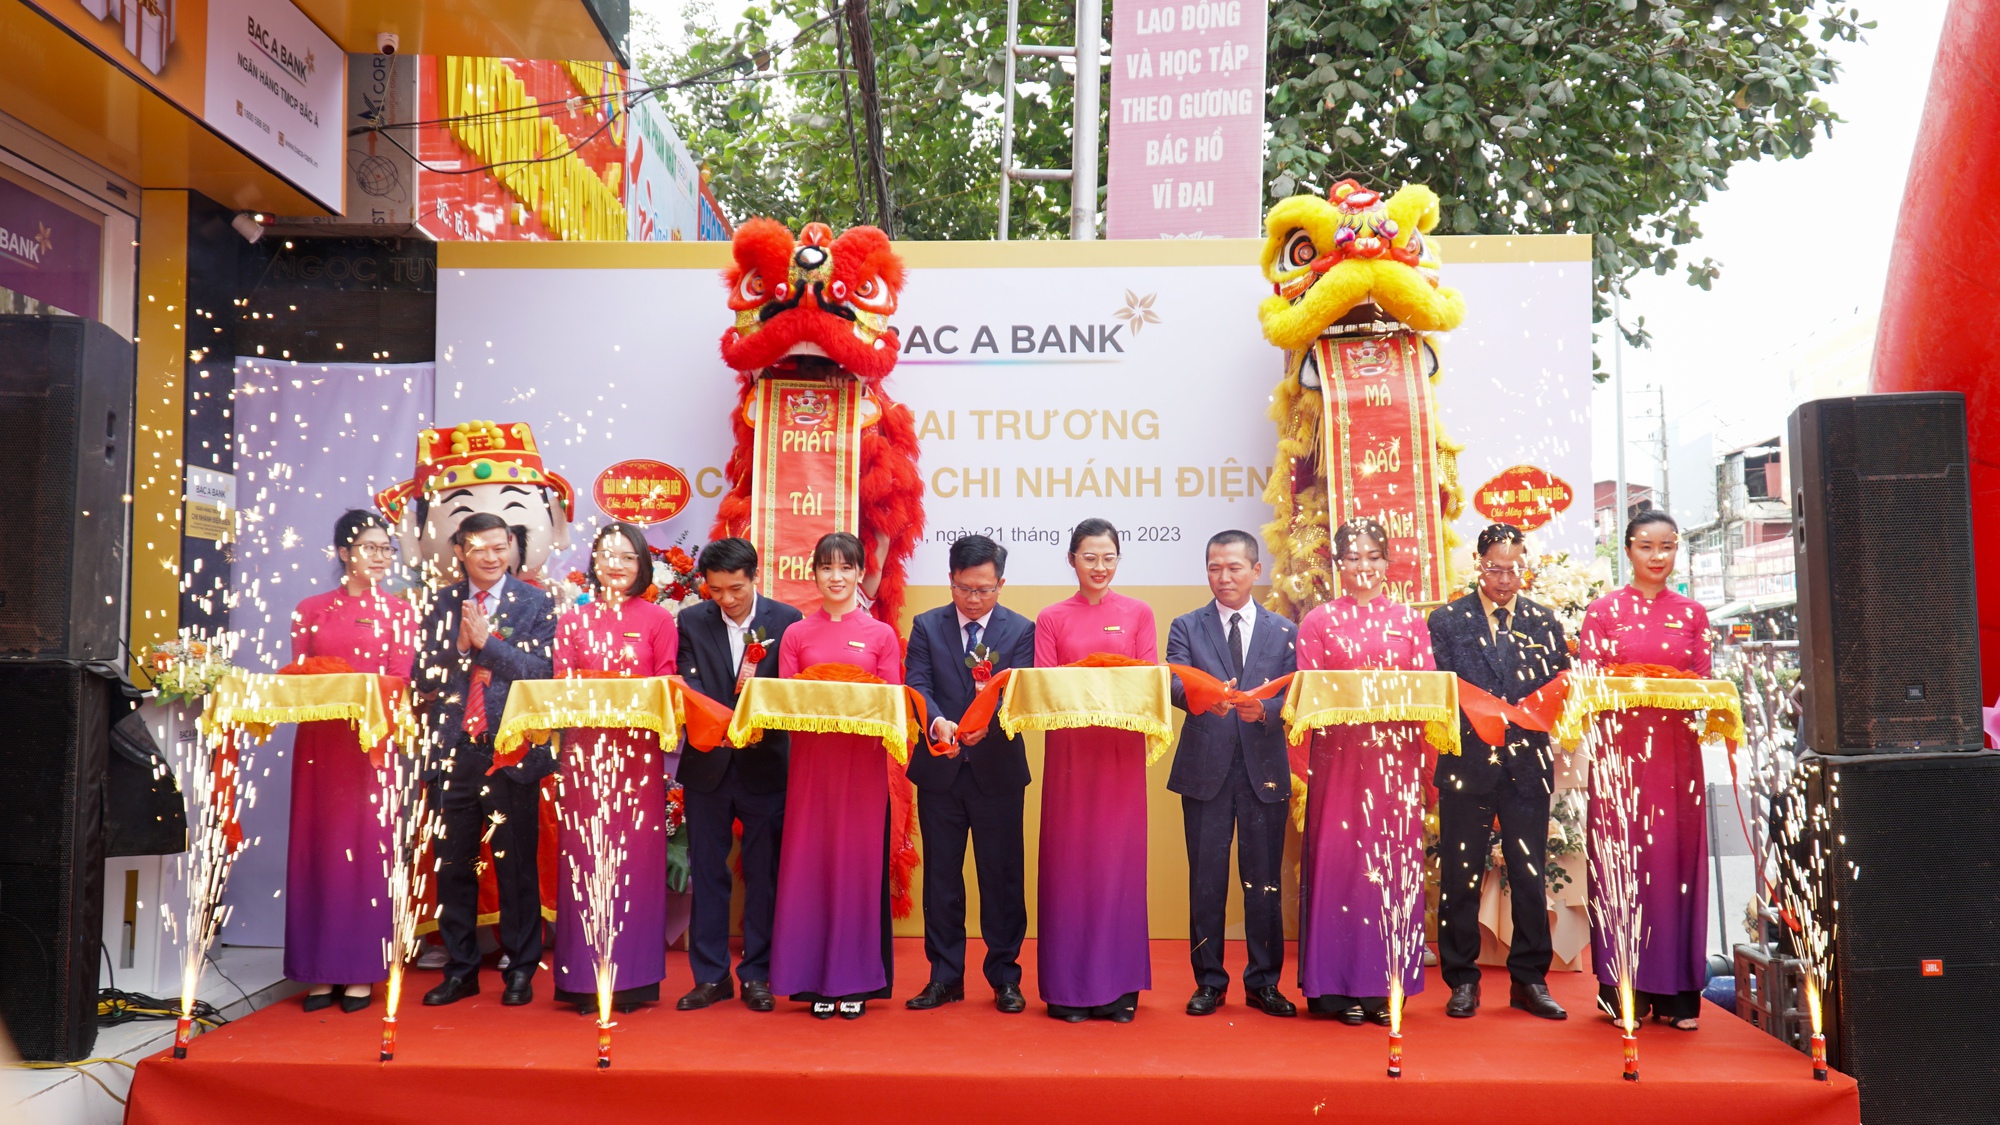 BAC A BANK mở rộng mạng lưới tại Điện Biên - Ảnh 1.